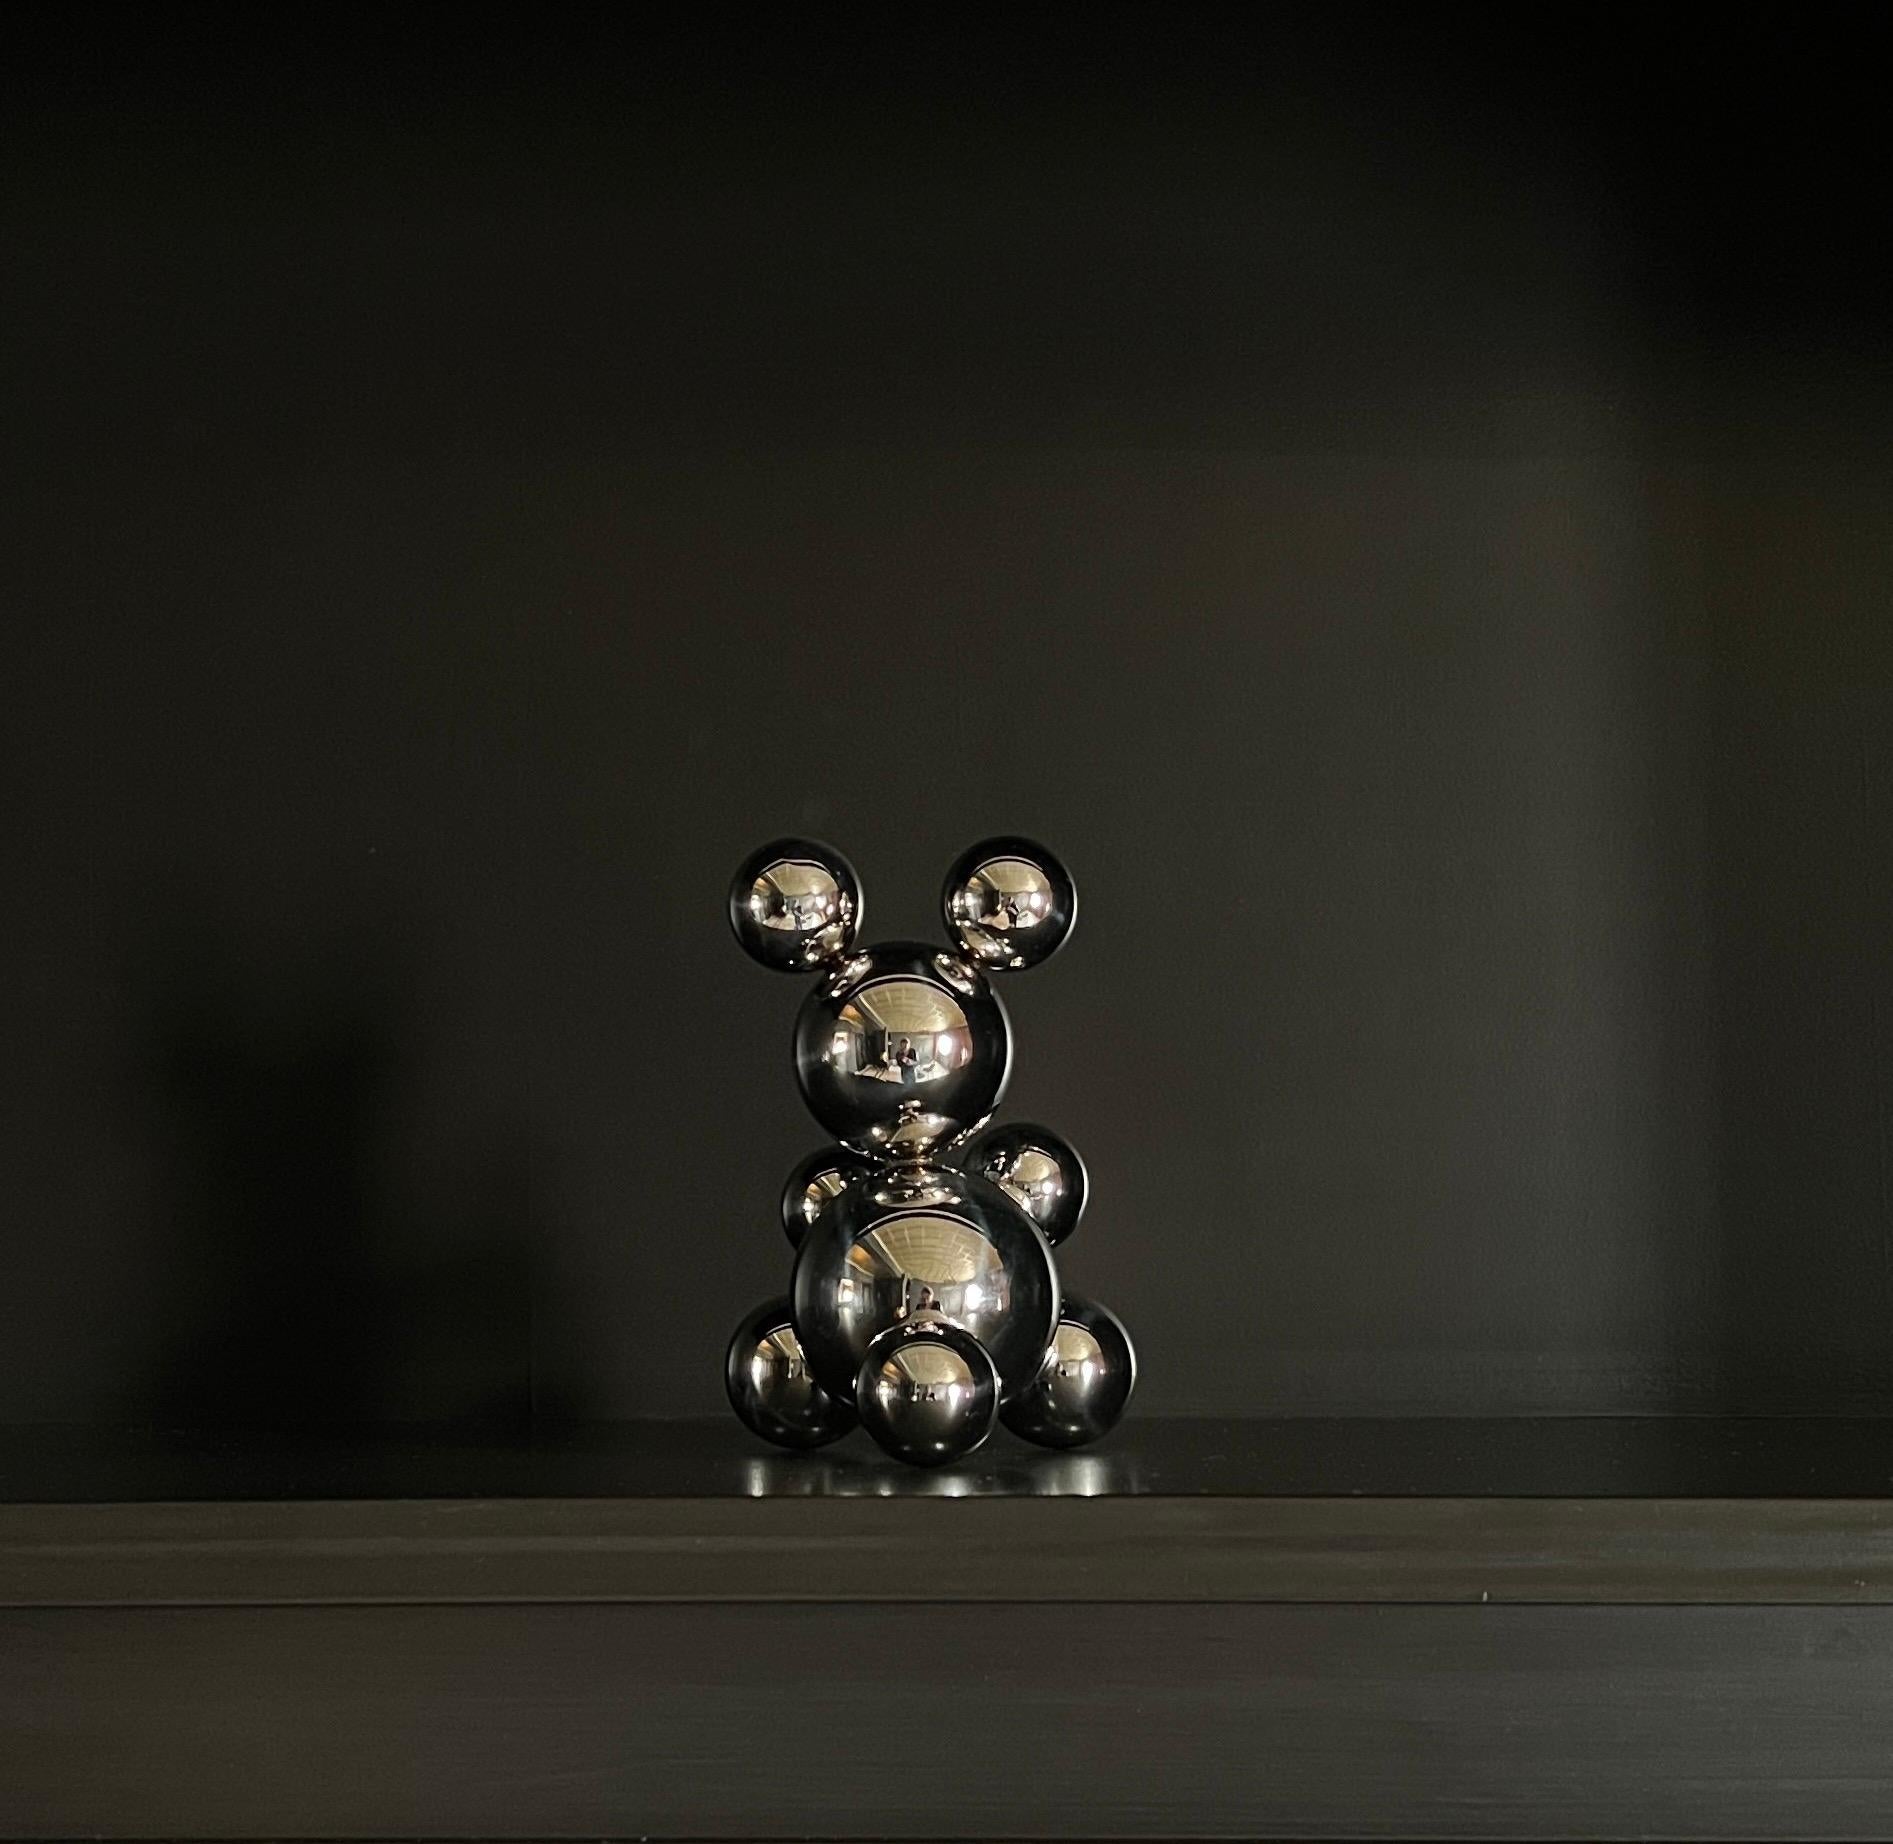 Tiny Stainless Steel Bear 'Amelia' Sculpture Minimalistic Animal 3